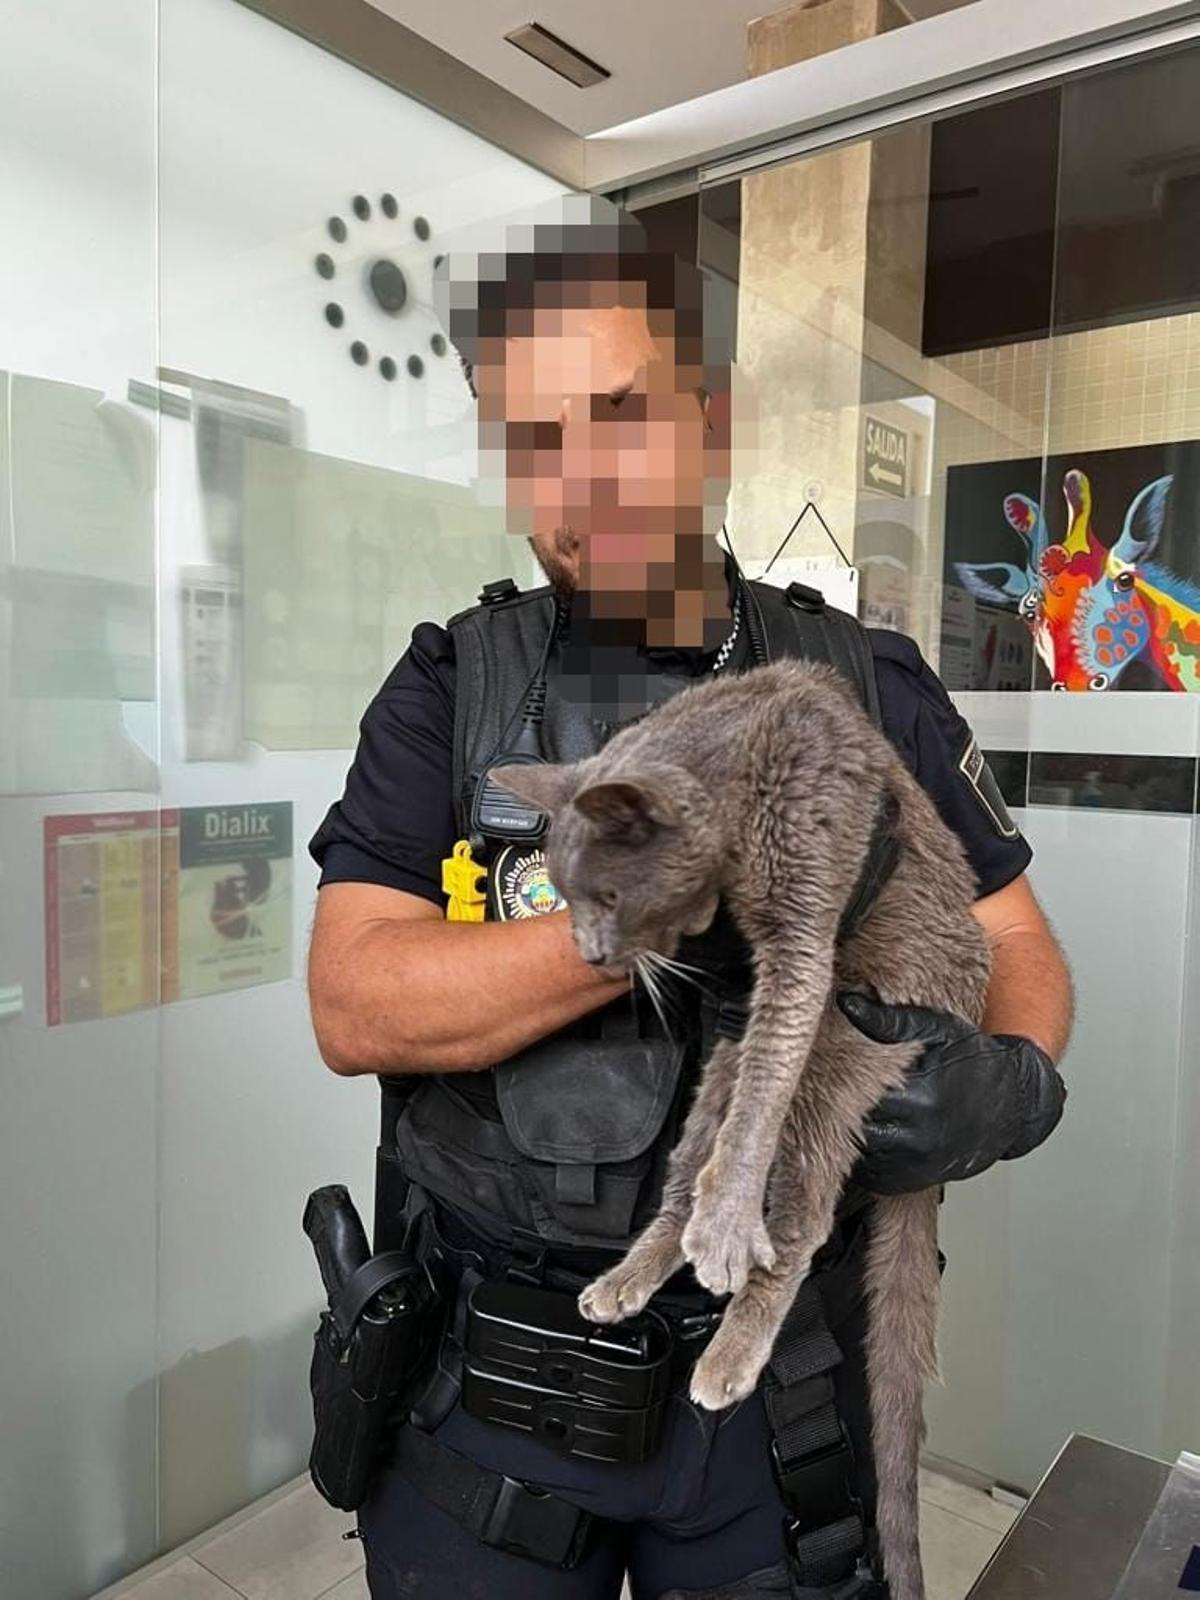 El agente de la policía sostiene al gato rescatado del acantilado